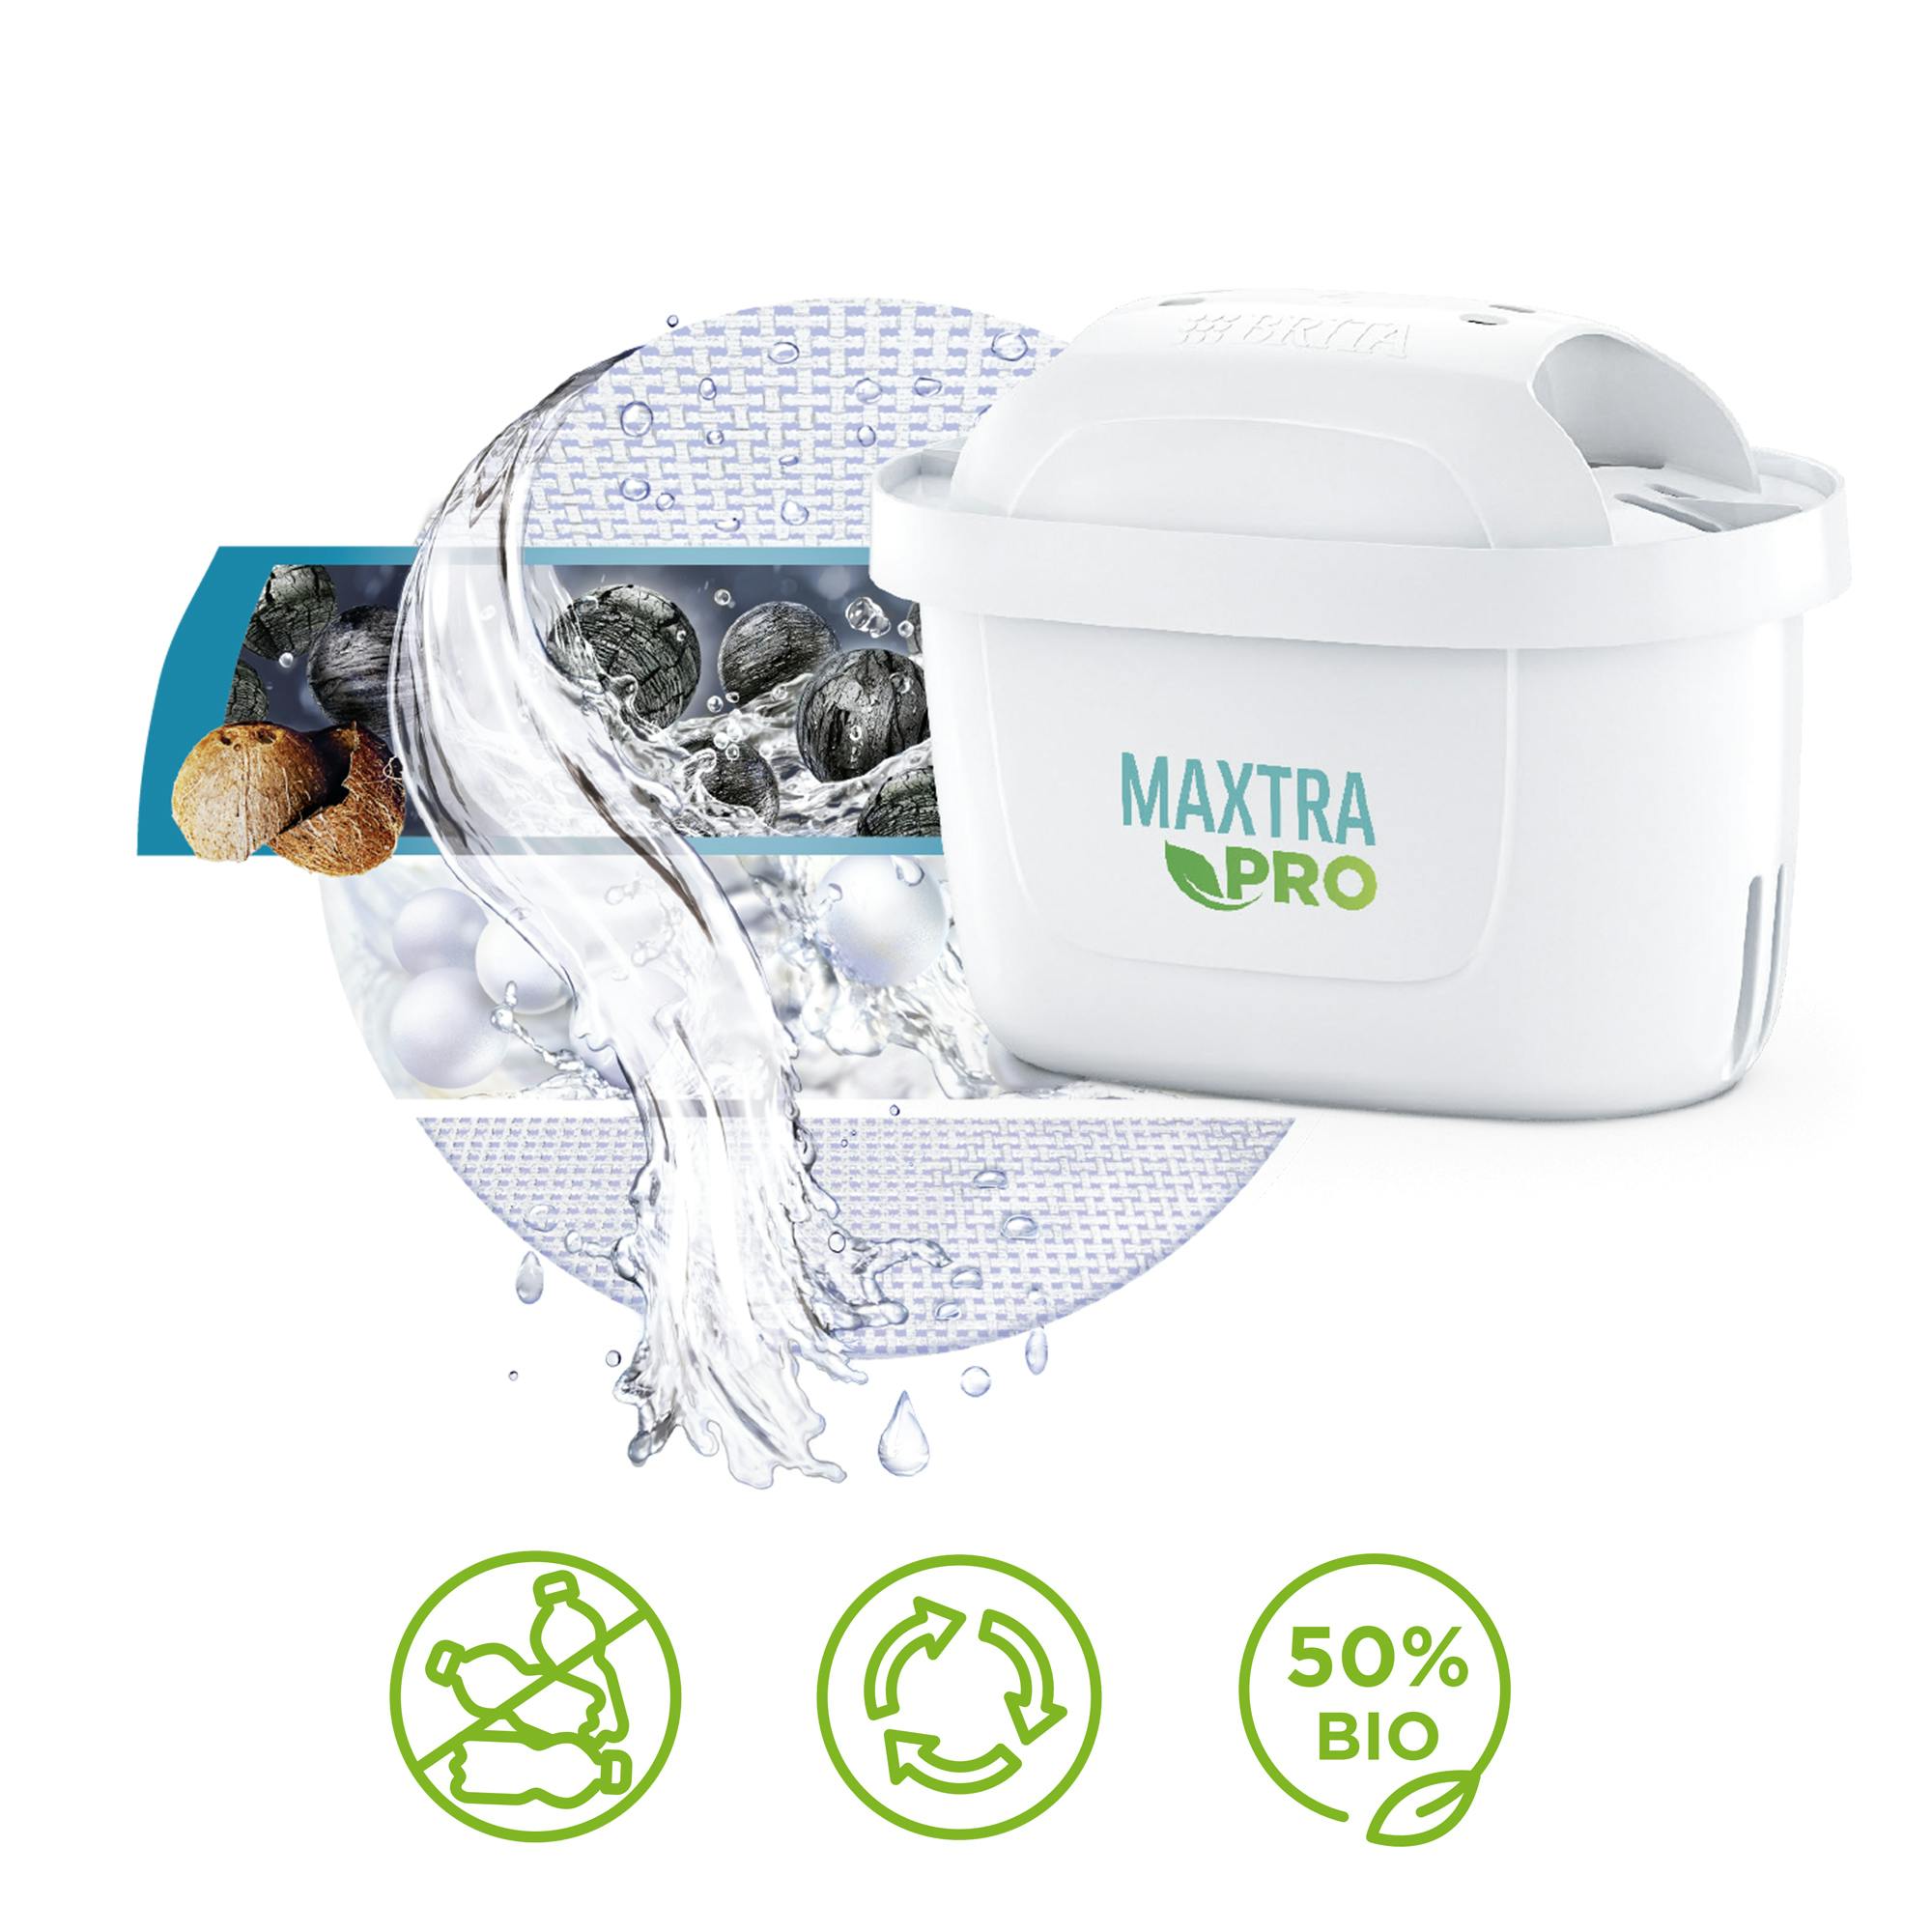 Depósito Brita Flow 8,21L con 1 filtro Maxtra Pro por 26,70€ antes 46,45€.